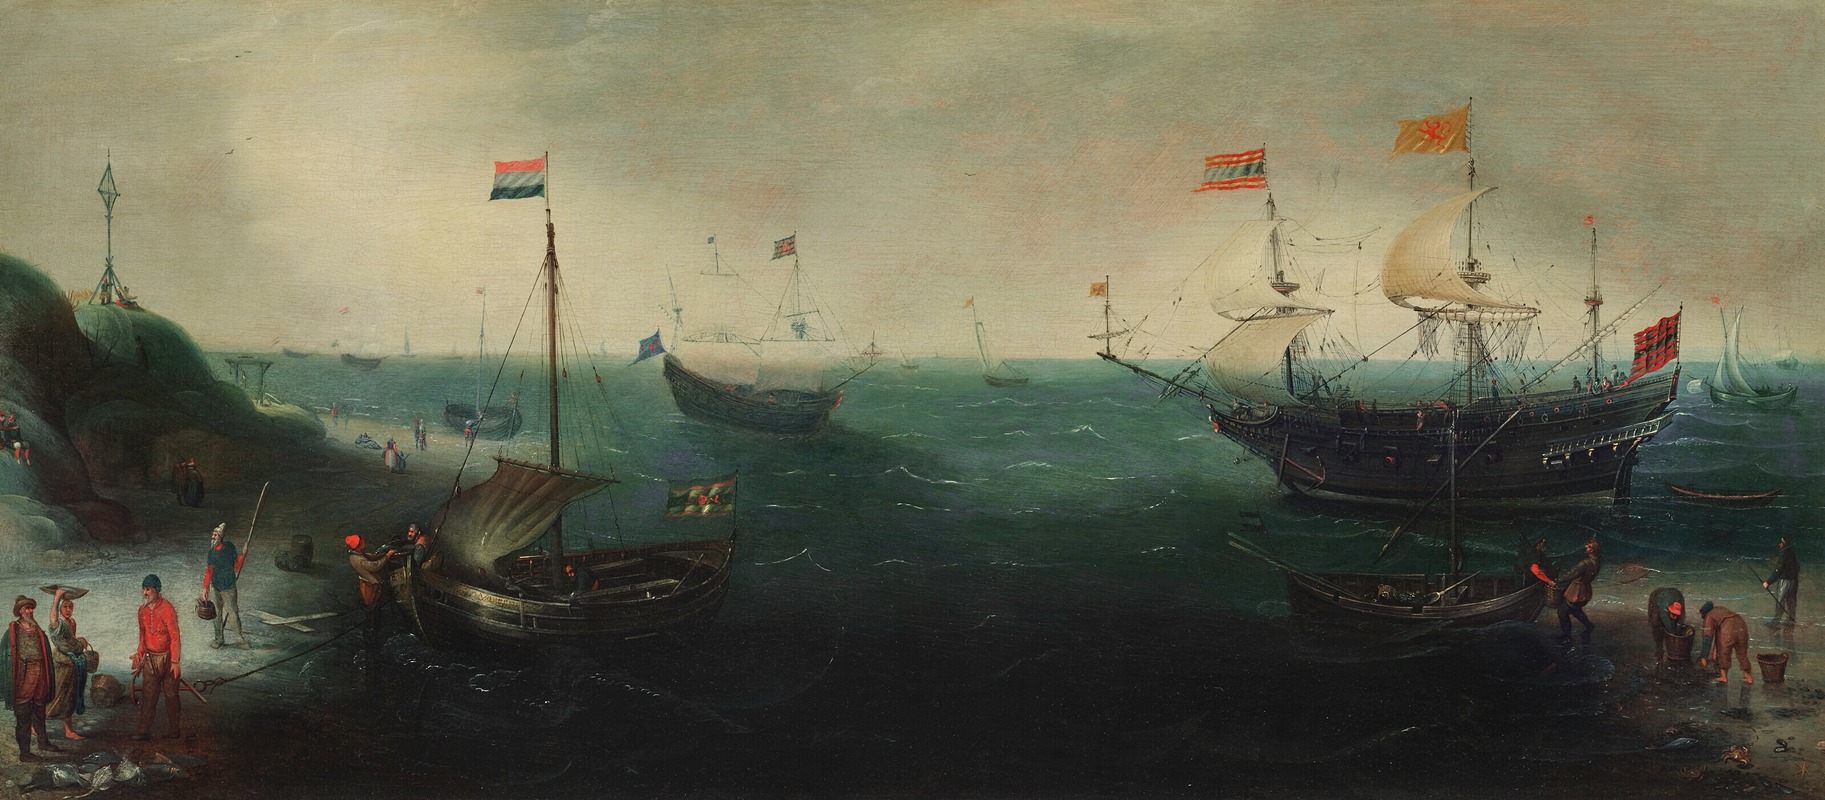 Cornelis Claesz. van Wieringen - A coastline with ships and figures on the shore